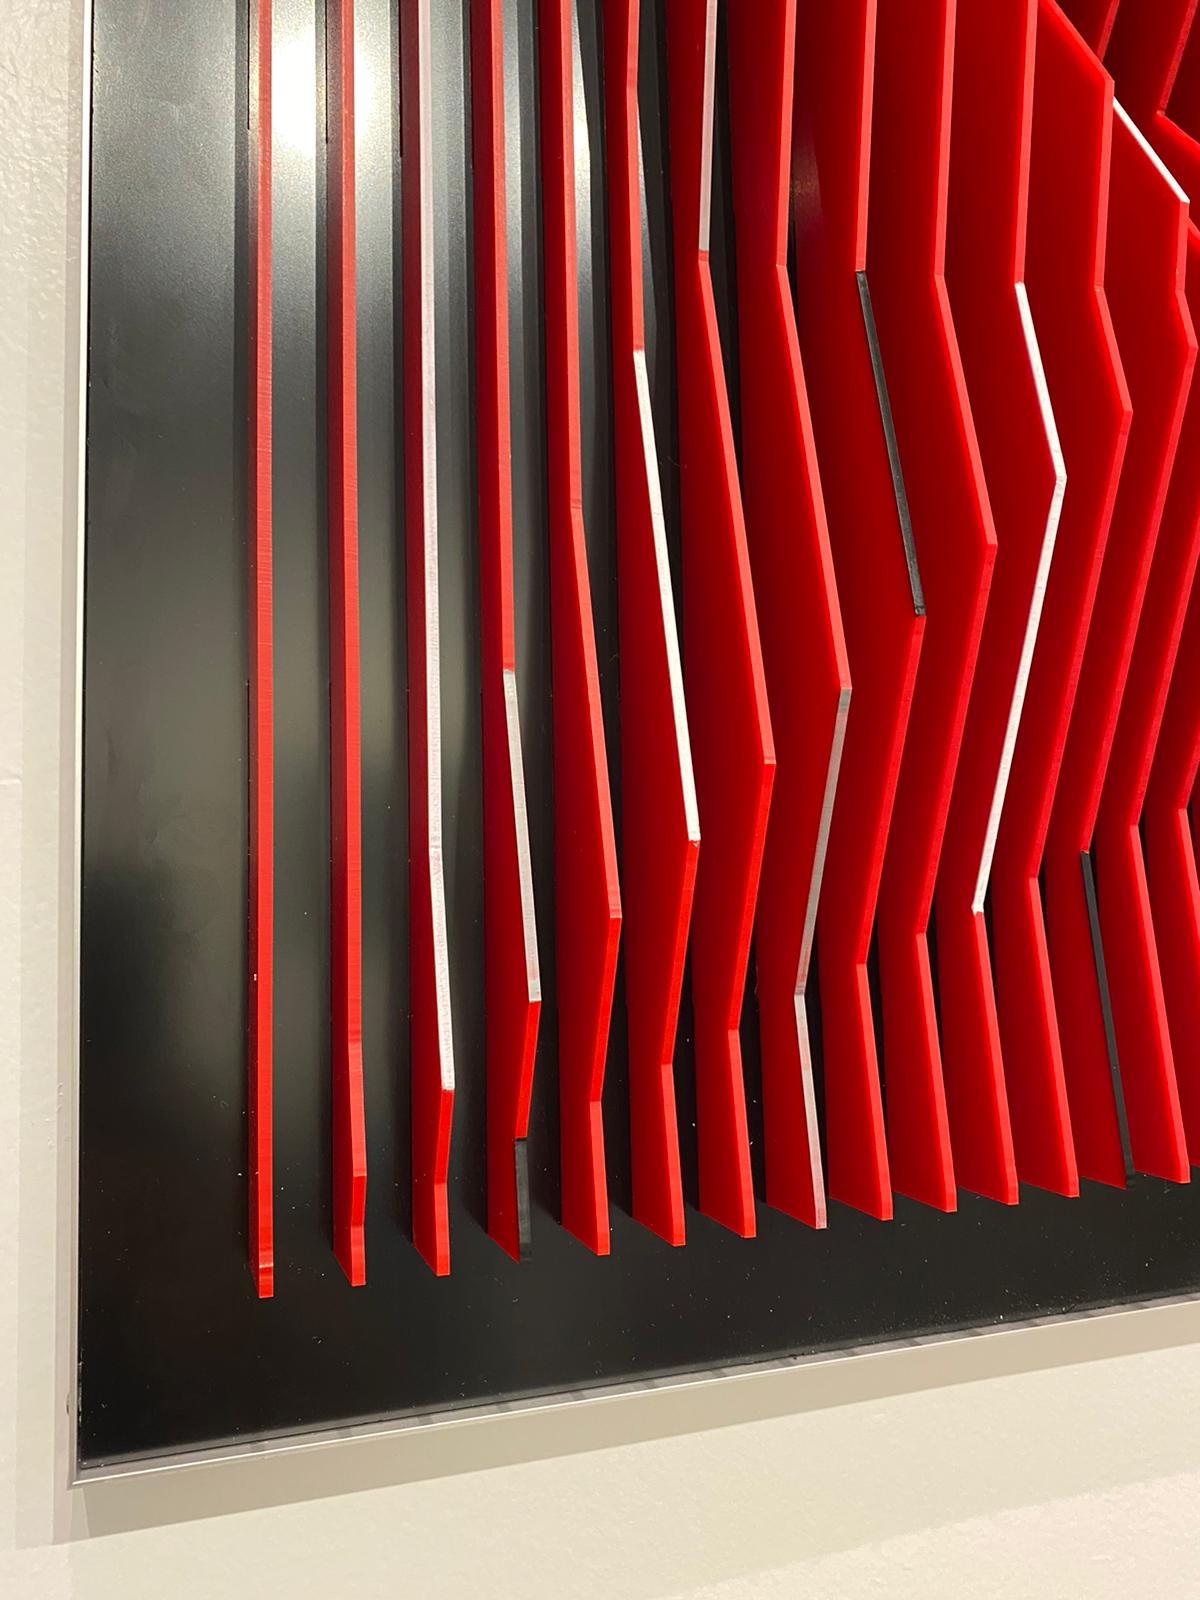 Cette pièce unique de Margulis fait partie de son dernier ensemble d'œuvres. Après avoir assemblé les plaques de plexiglas sur le noyau d'aluminium, il utilise des peintures acryliques pour couvrir une partie de la face avant des plaques. 
La